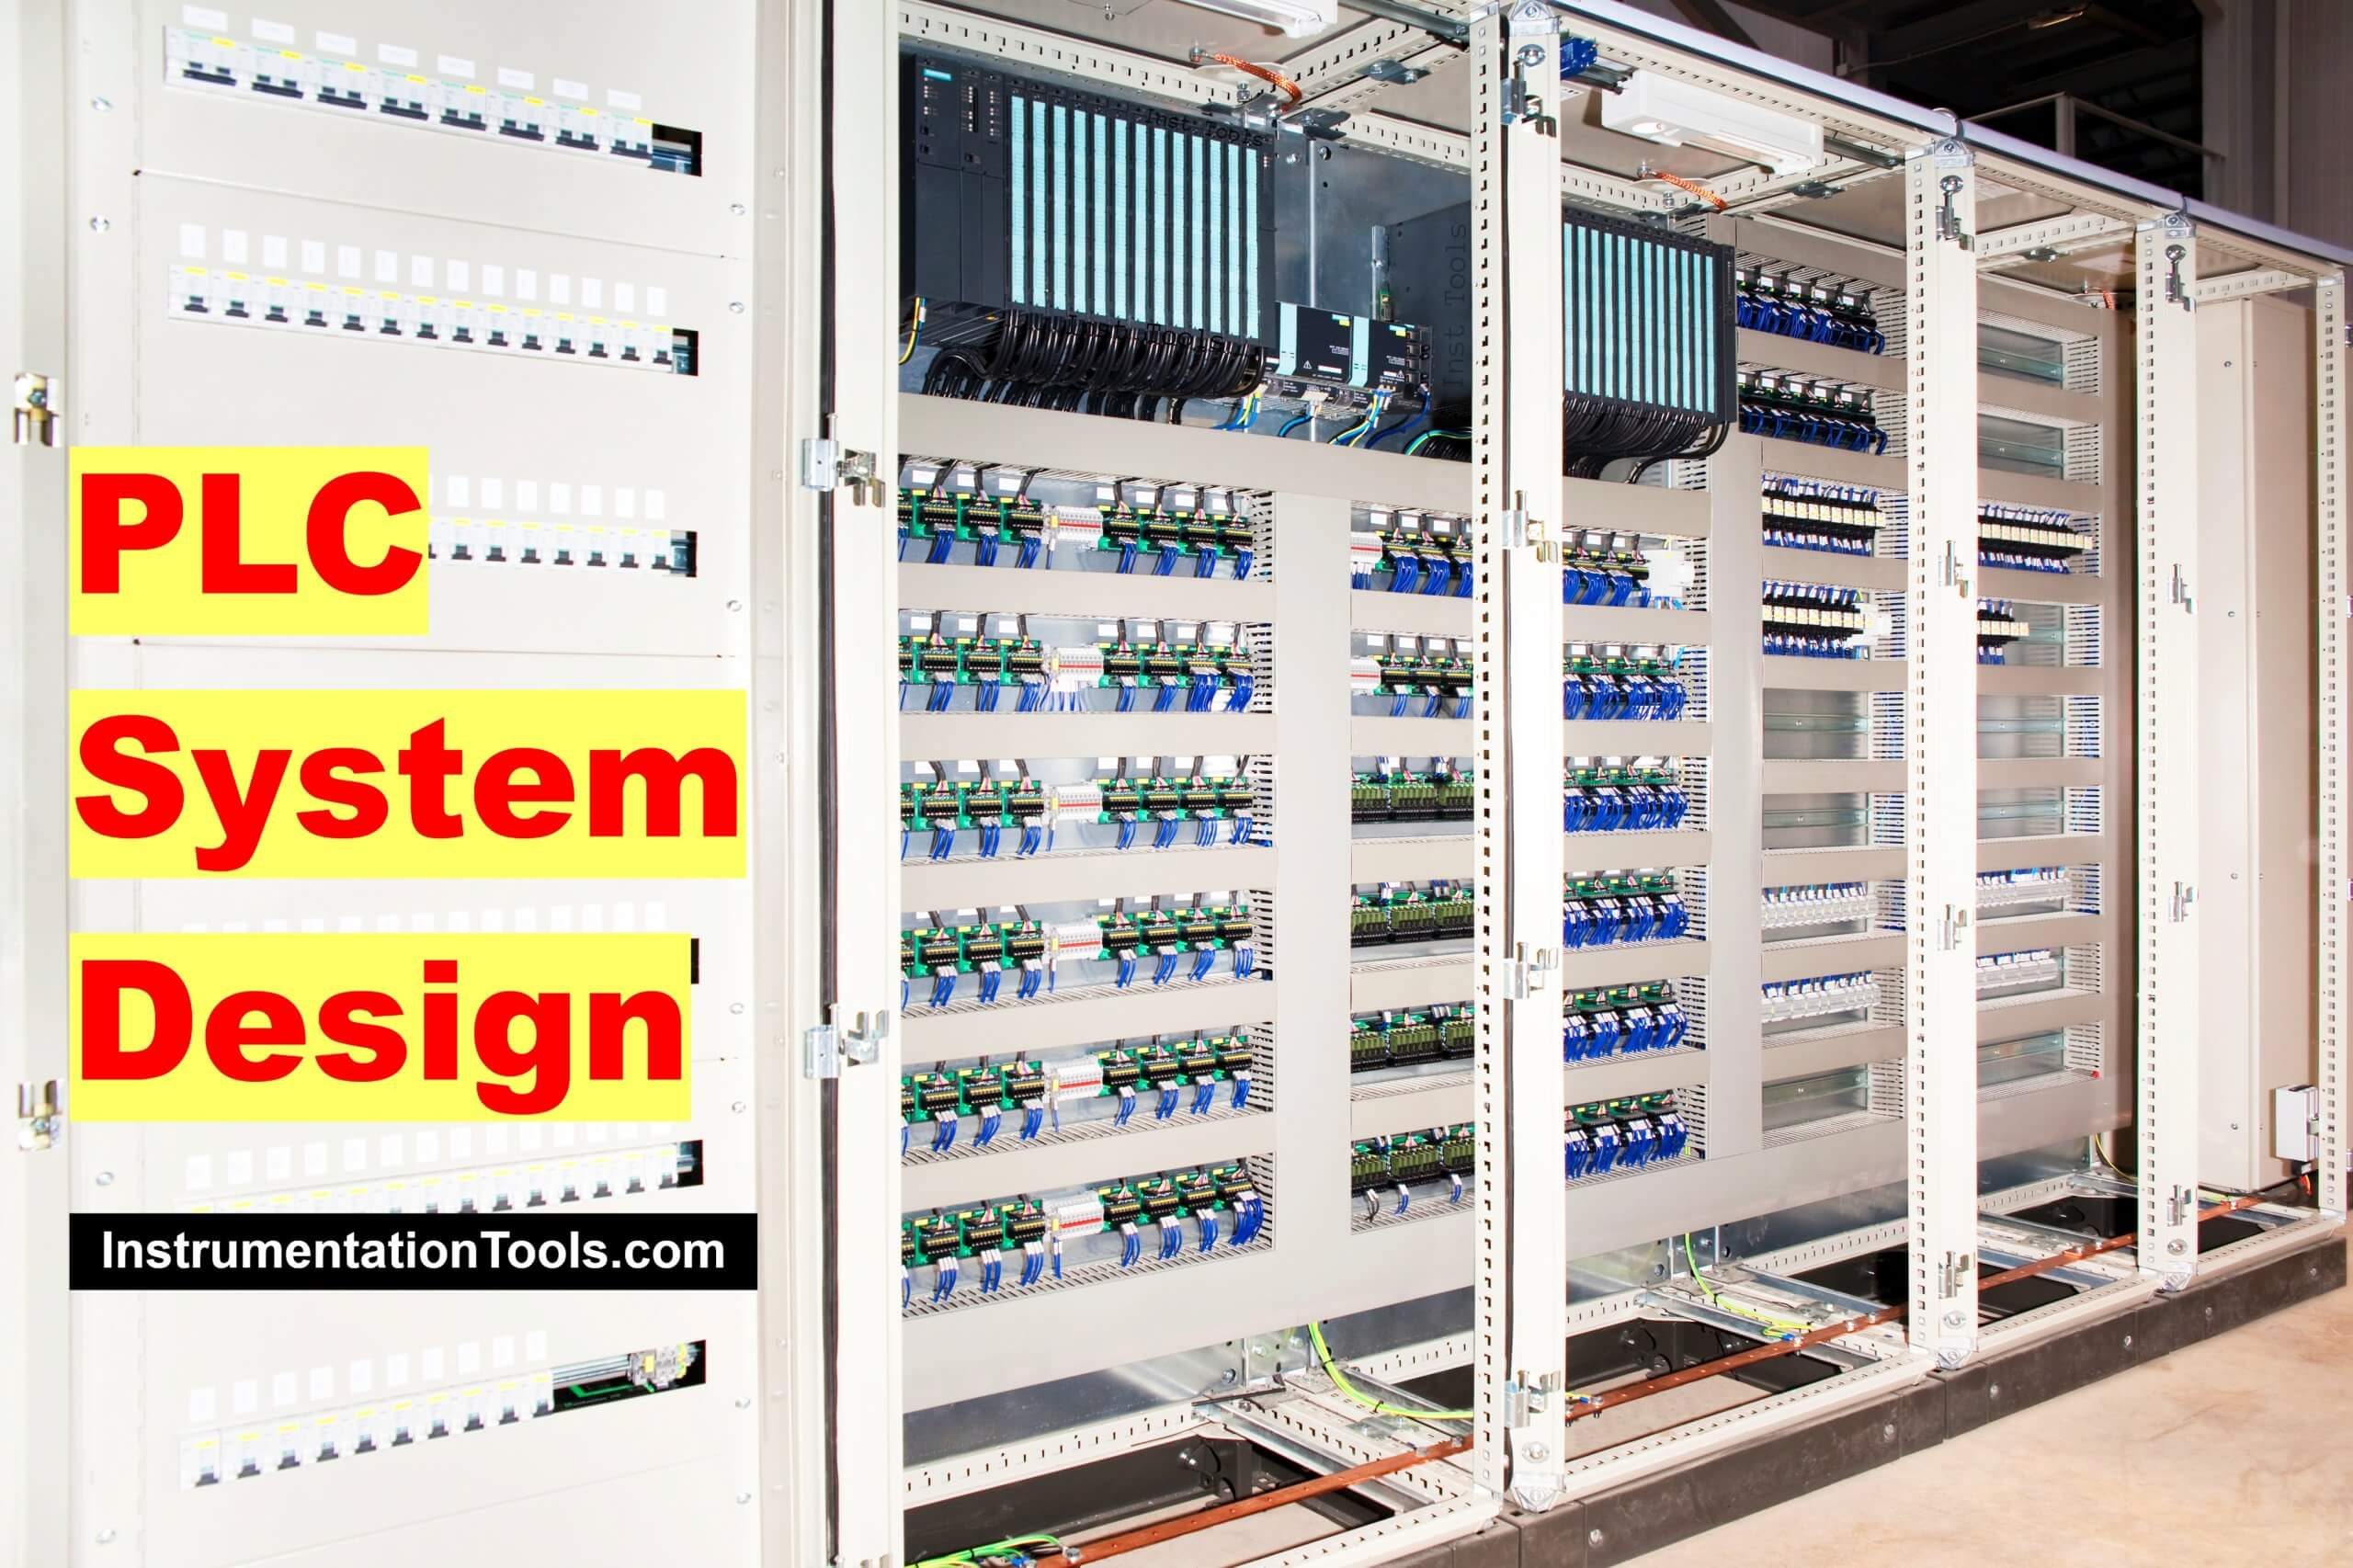 Steps in PLC System Design